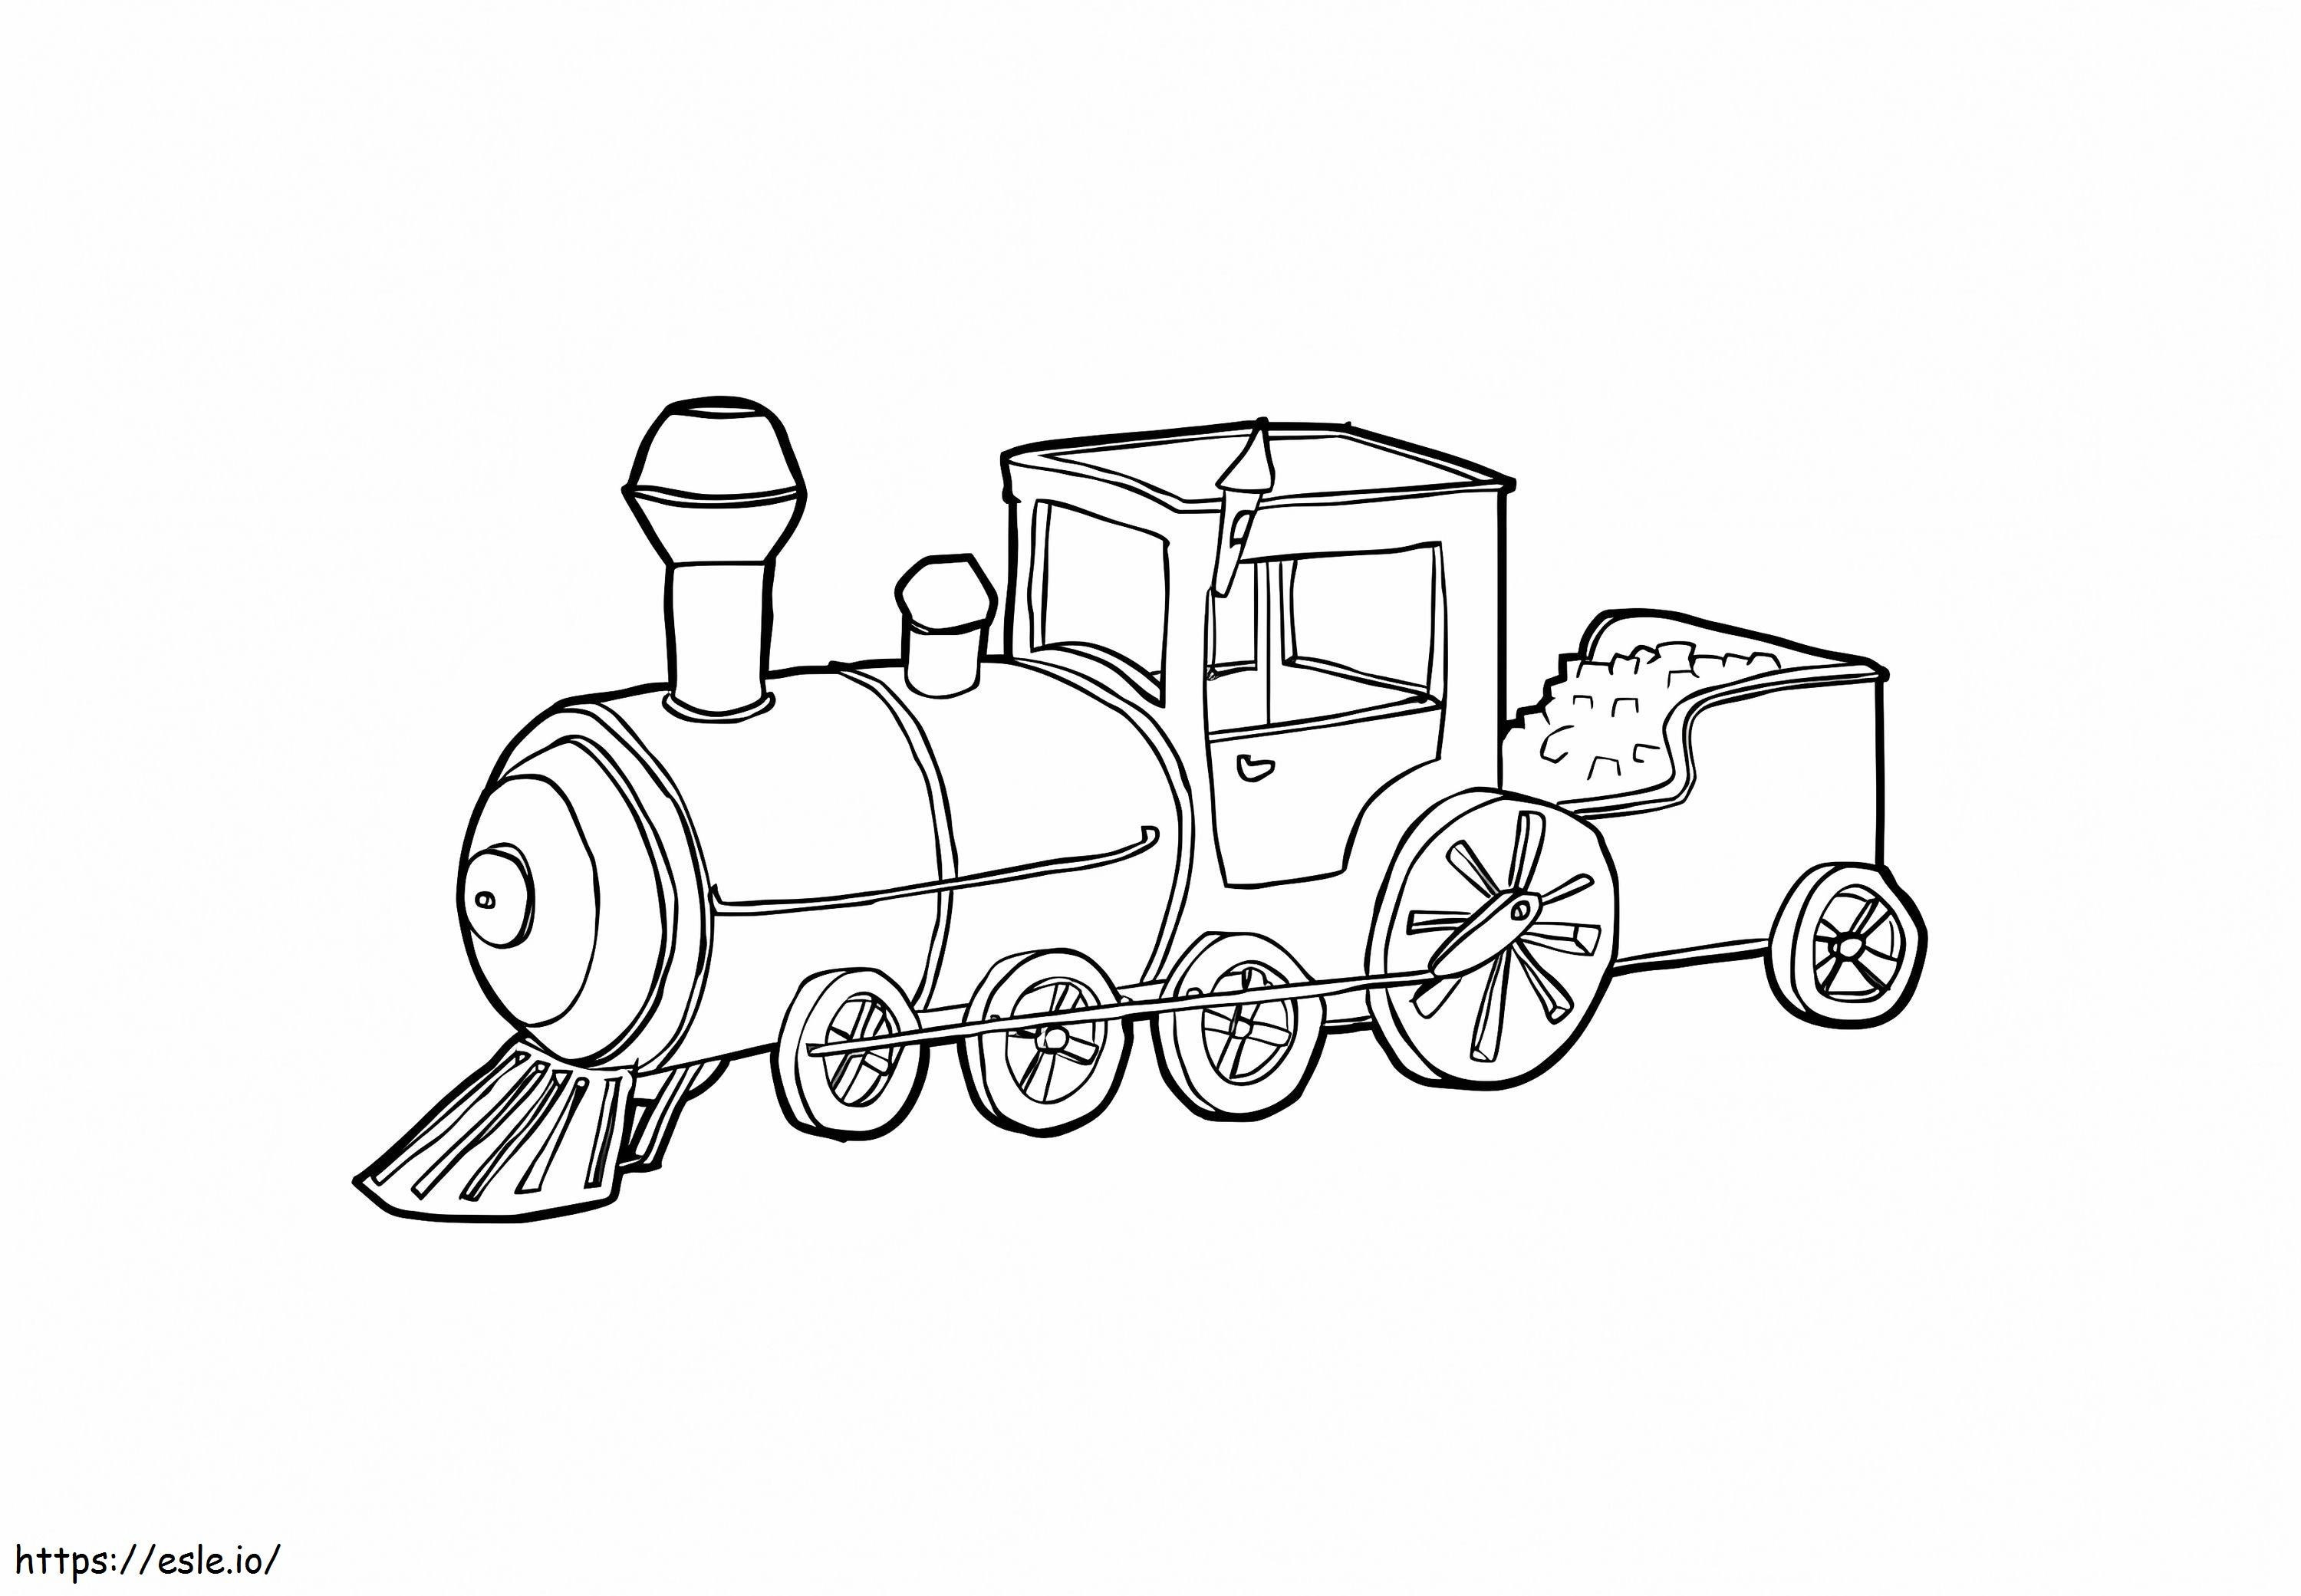 Tren motoru boyama